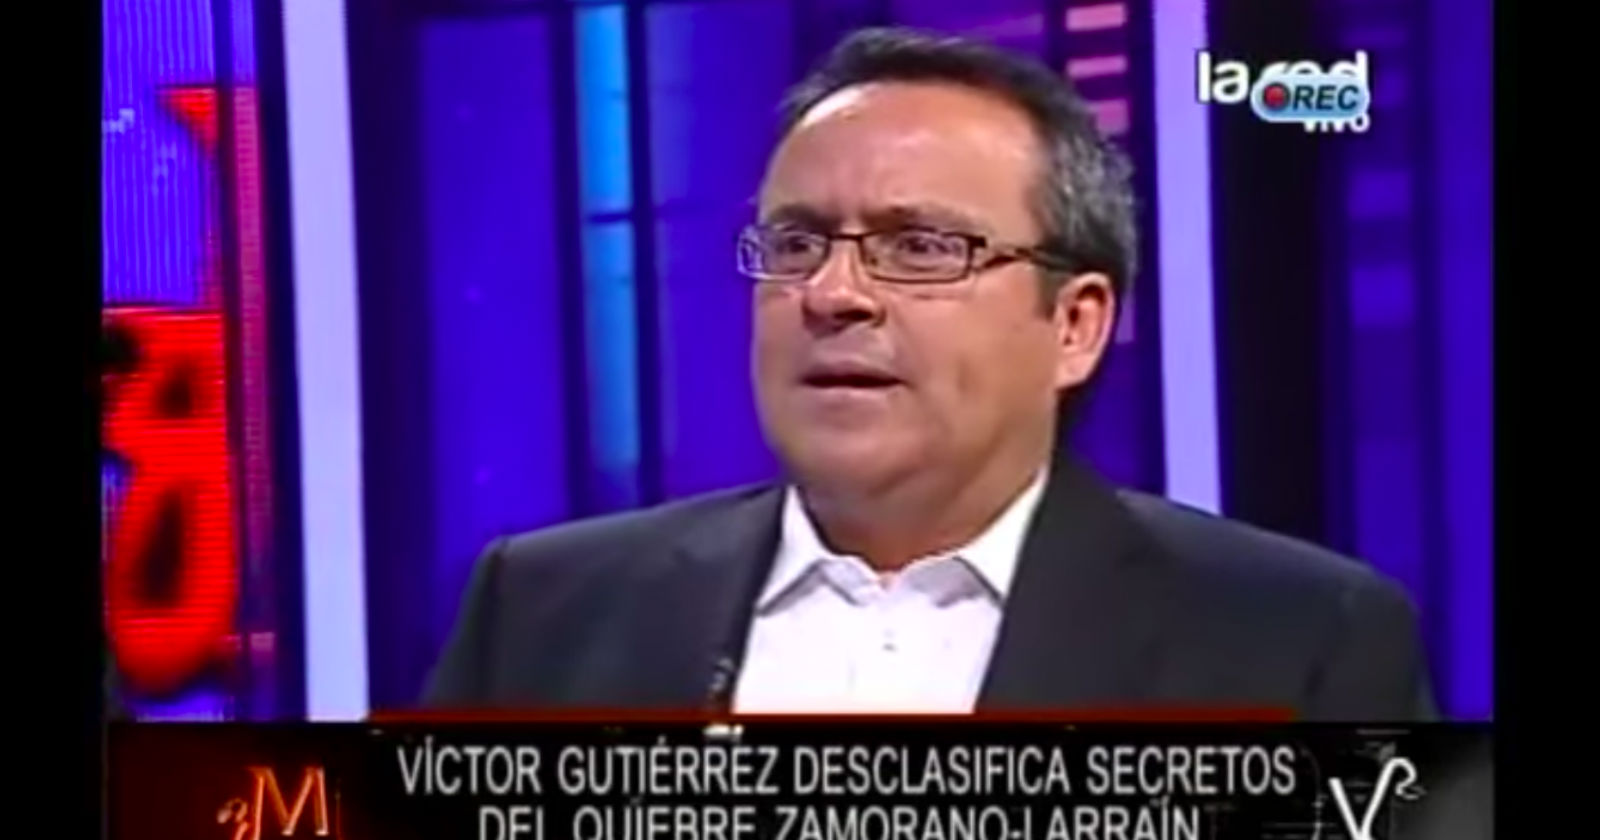 Víctor Gutiérrez La Red